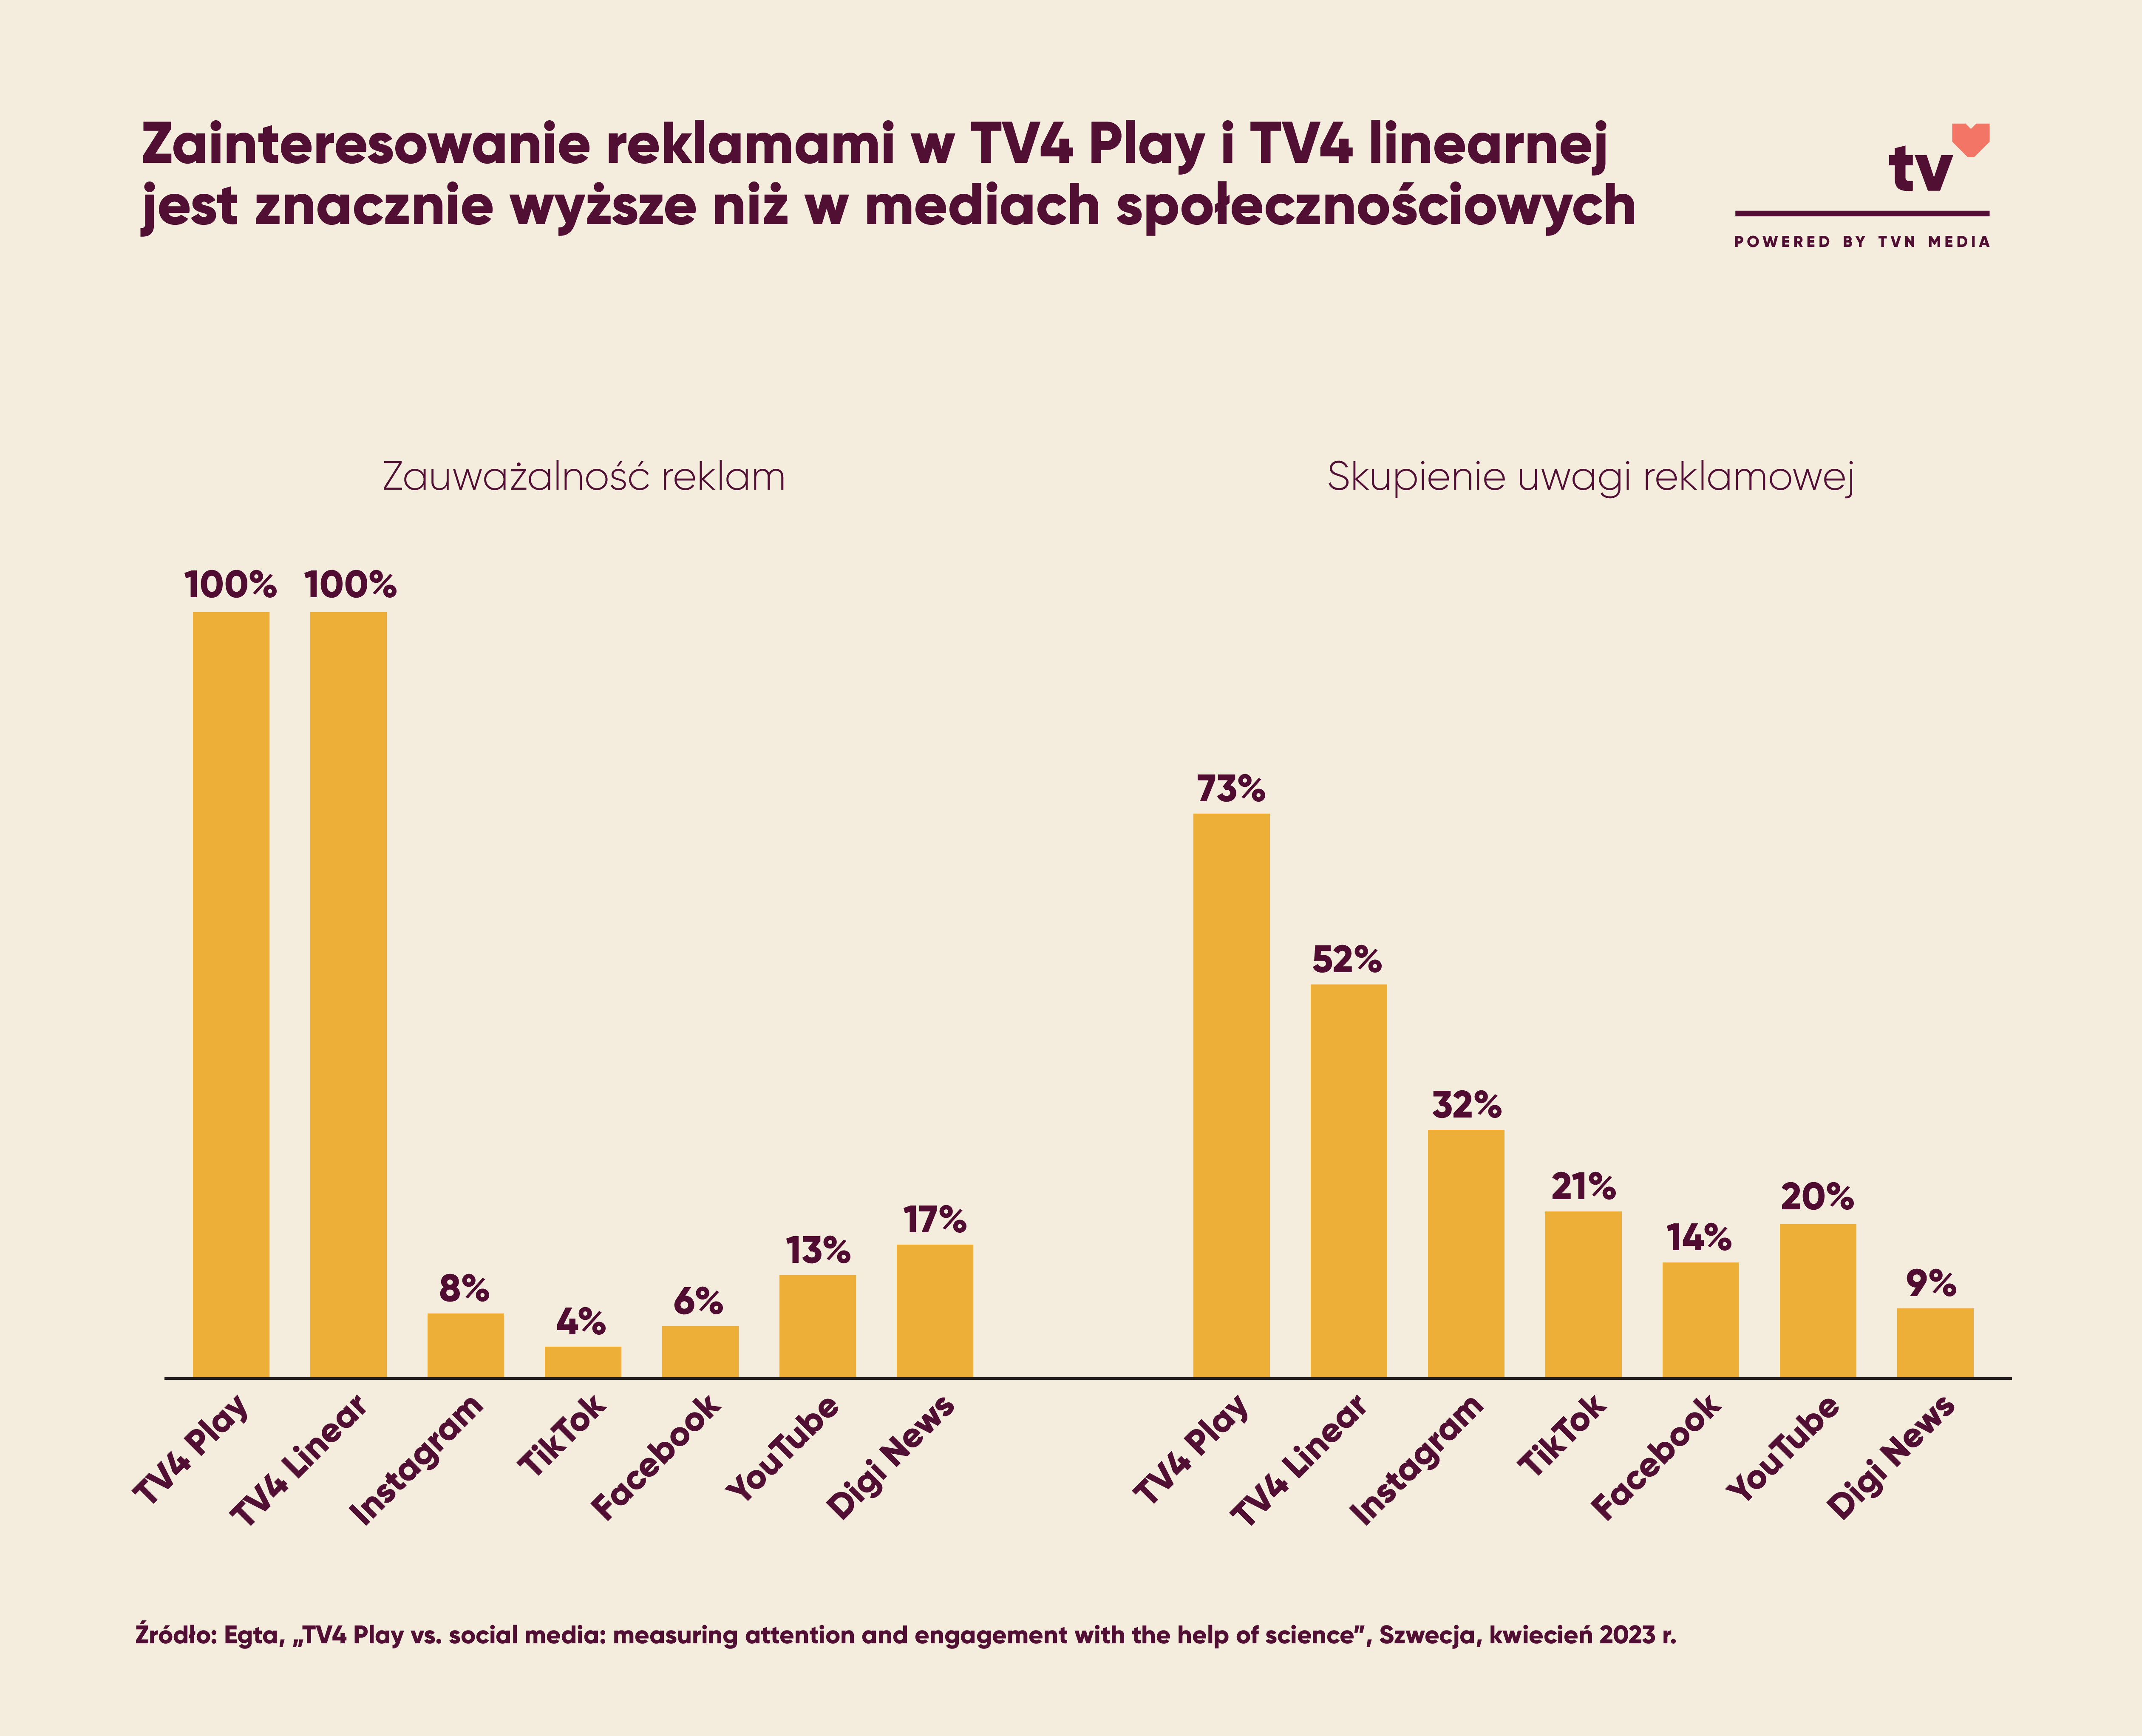 Zainteresowanie reklamami w TV4 Play i TV4 linearnej jest znacznie wyższe niż w mediach społecznościowych.